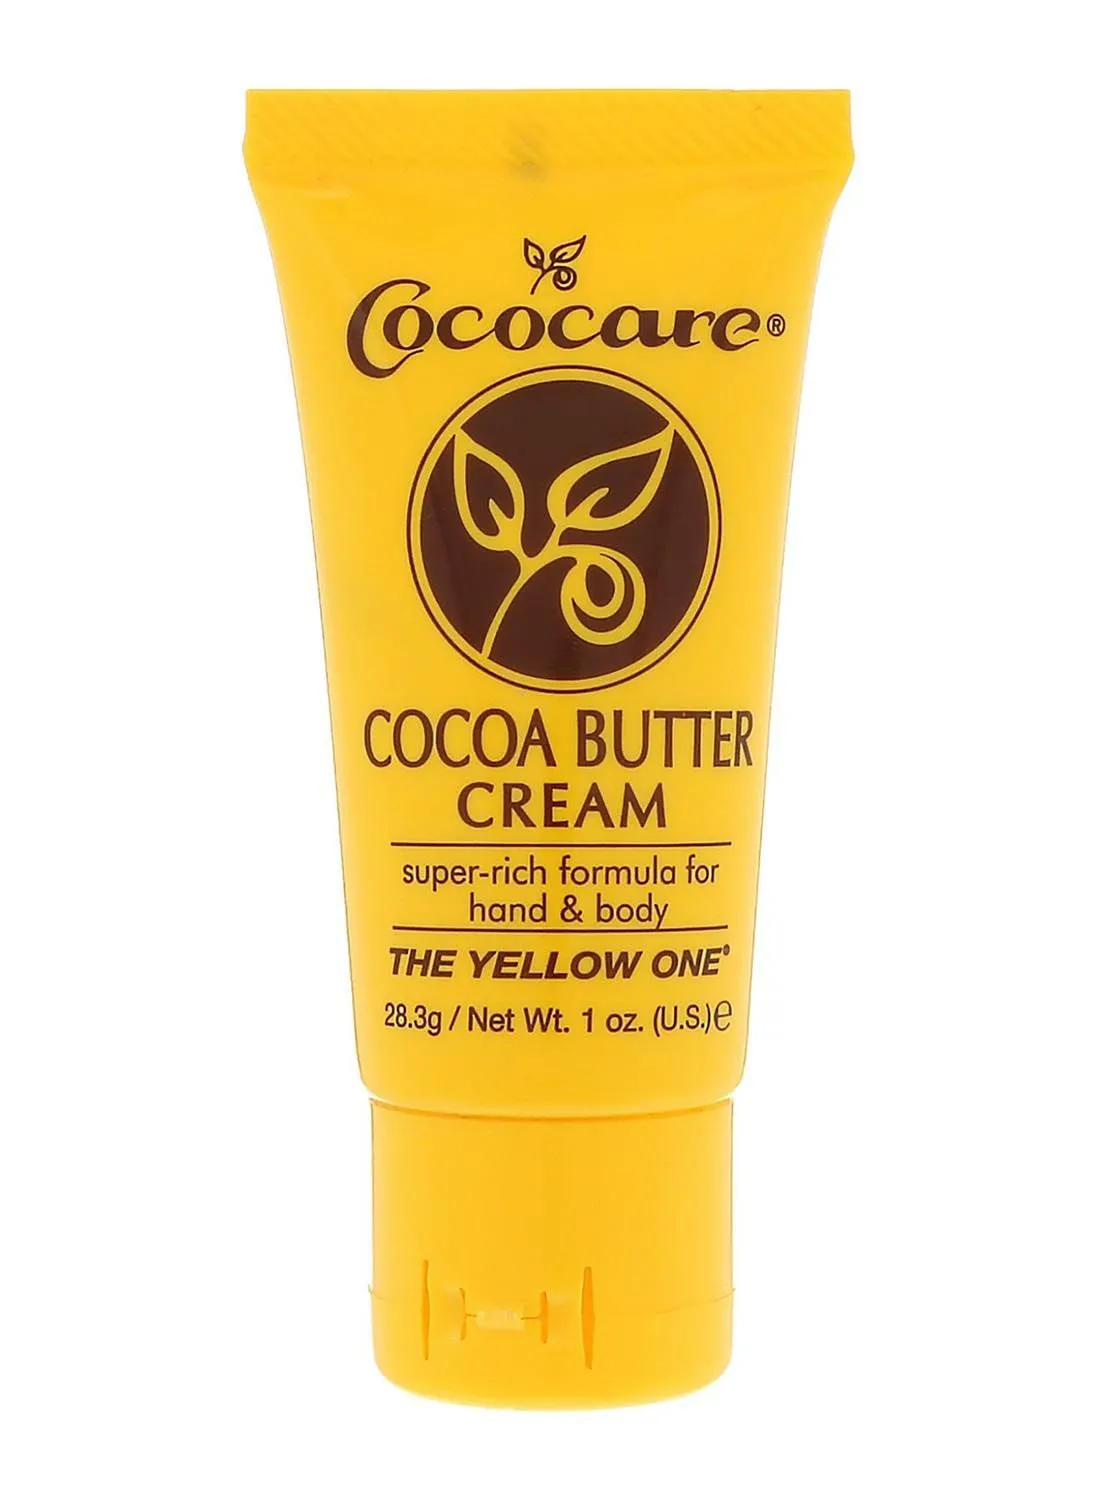 Cococare Cocoa Butter Cream 28.3grams